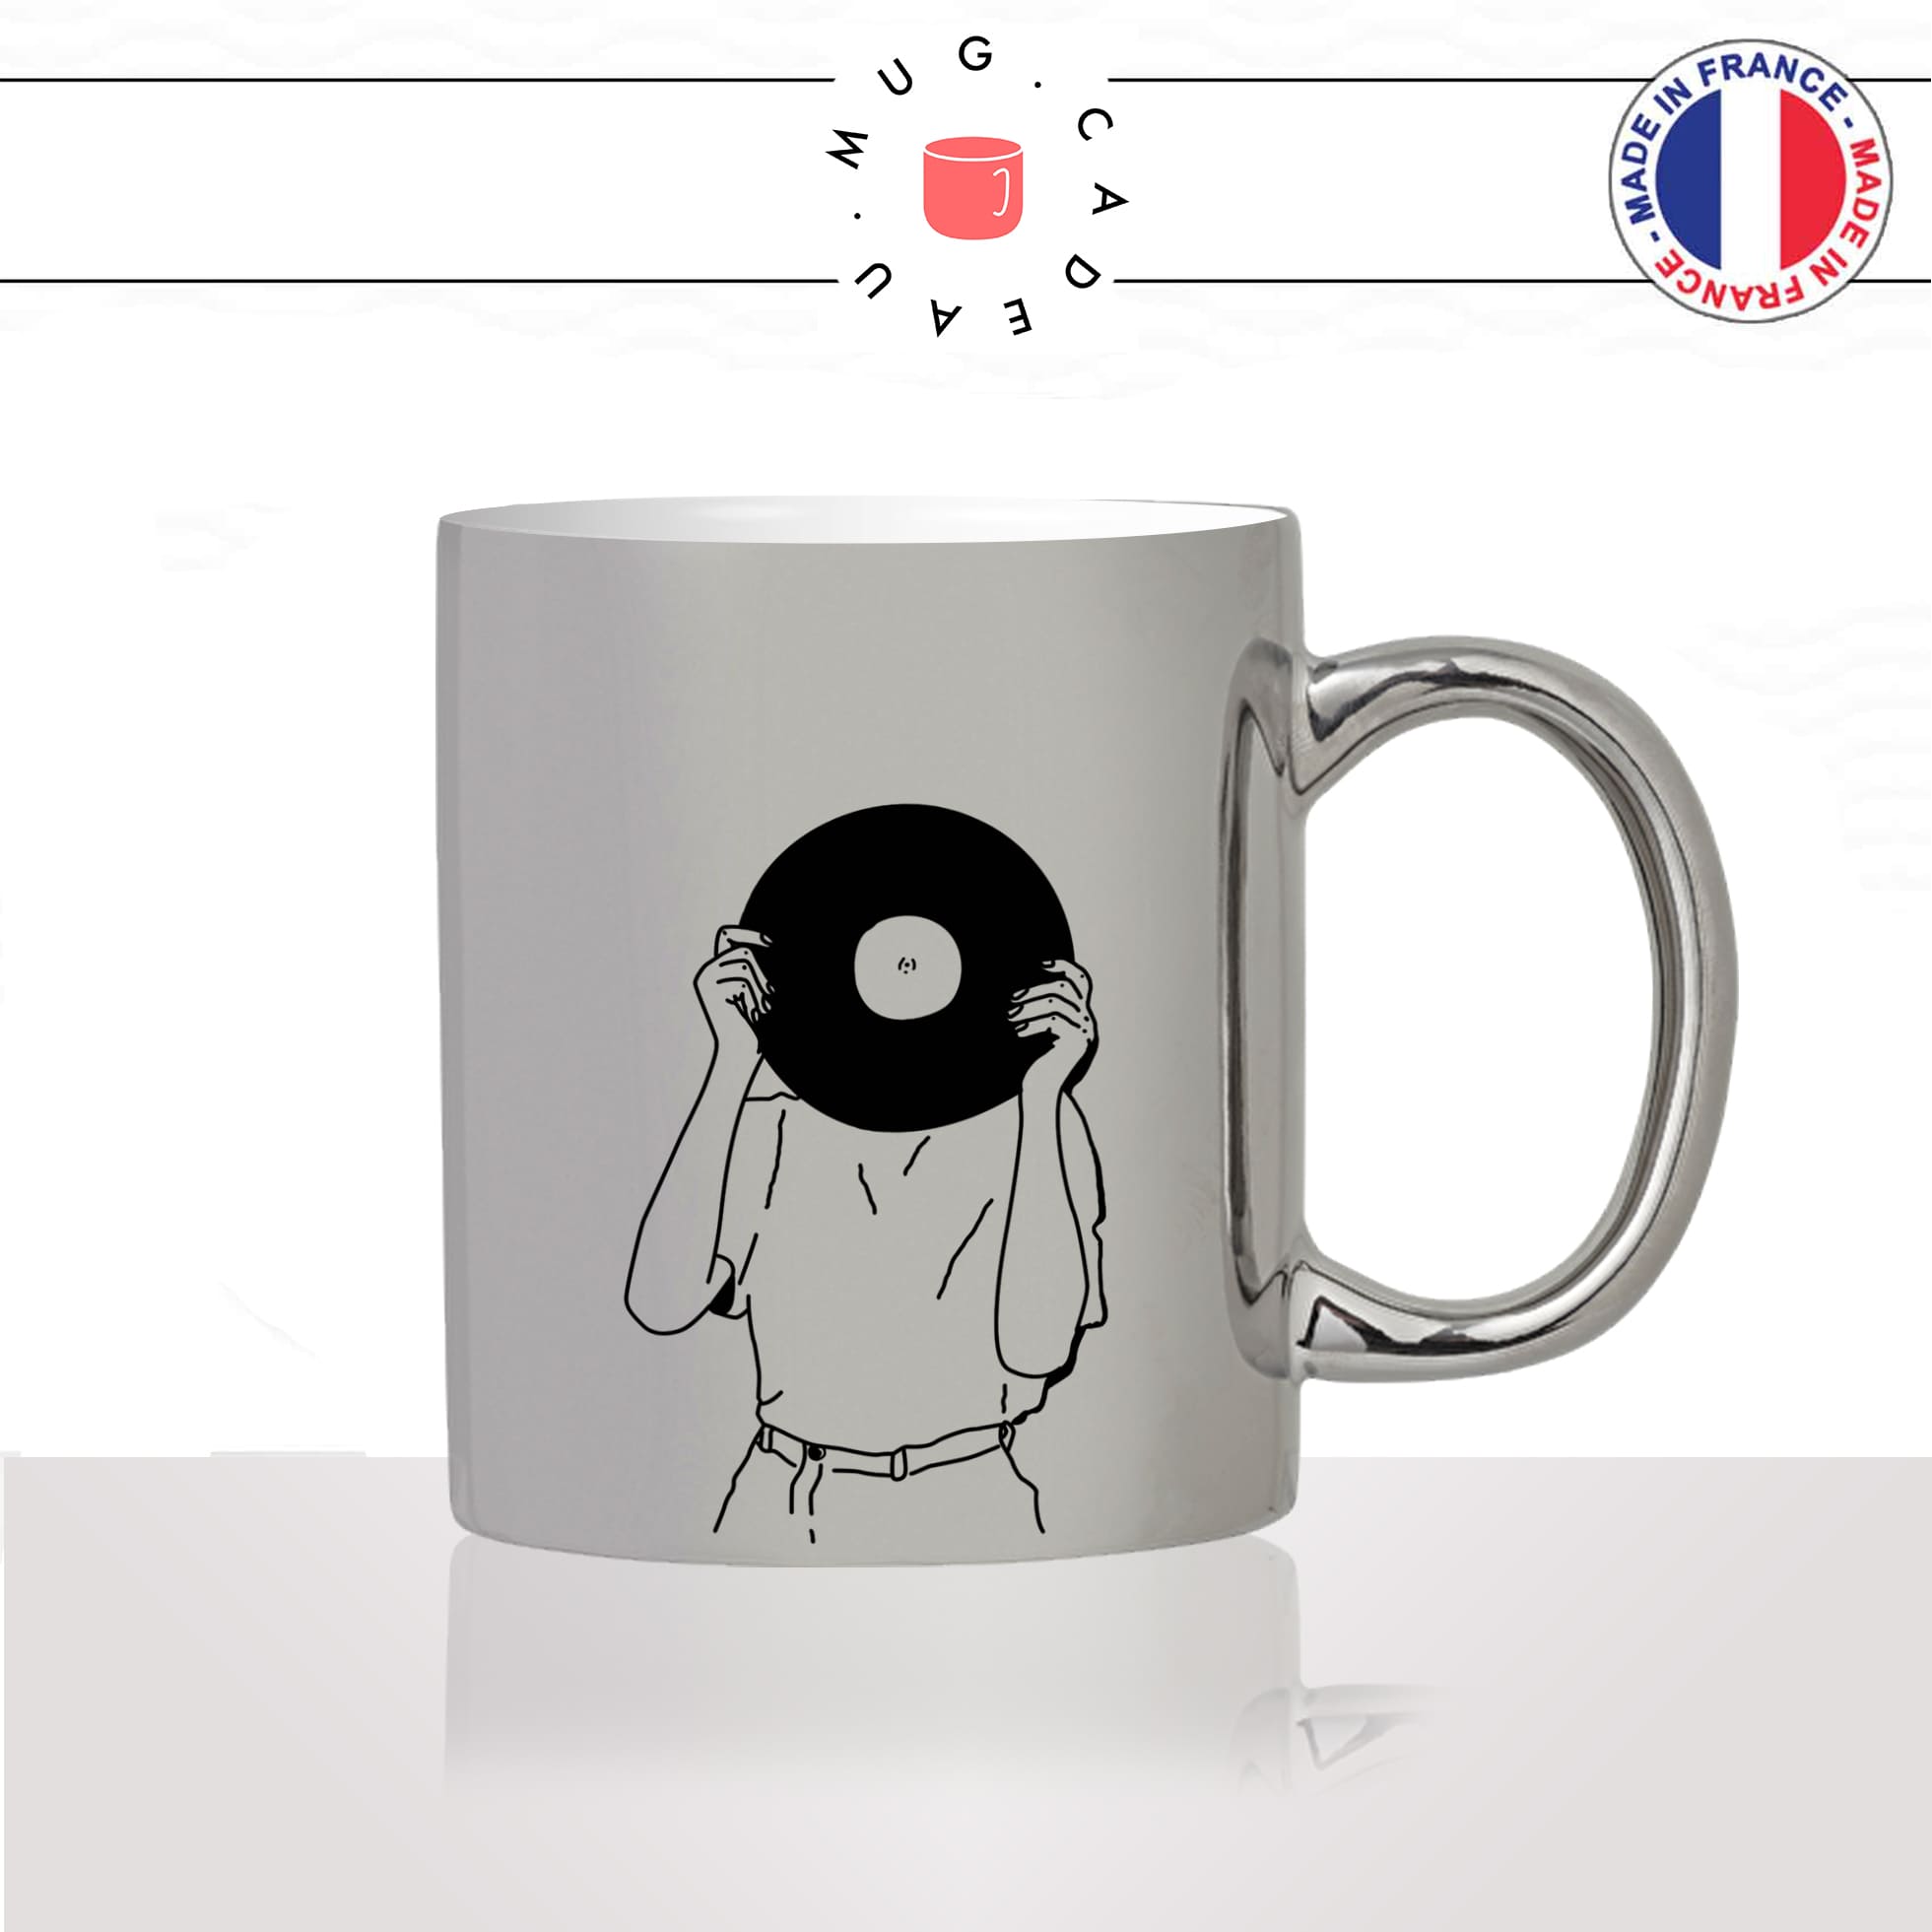 mug-tasse-argent-argenté-silver-disque-vinyl-femme-dessin-chanson-platine-danse-chant-passion-idée-cadeau-fun-cool-café-thé2